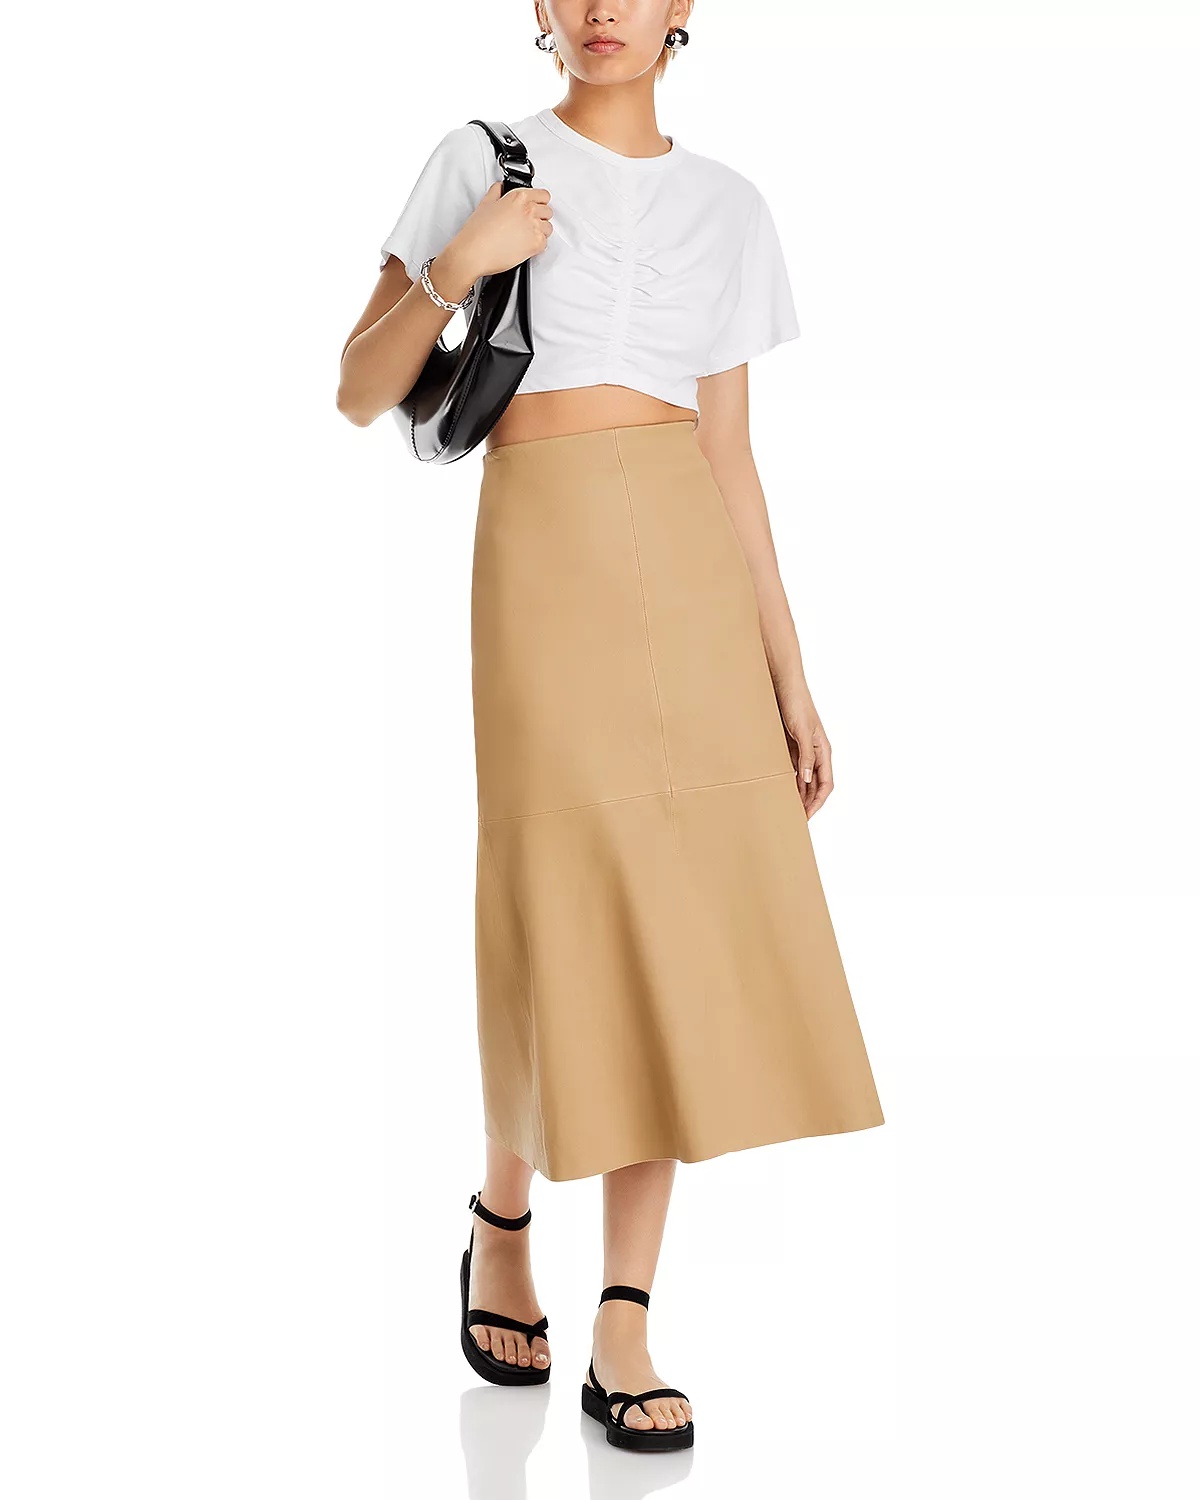 Simoas Leather Skirt - 2